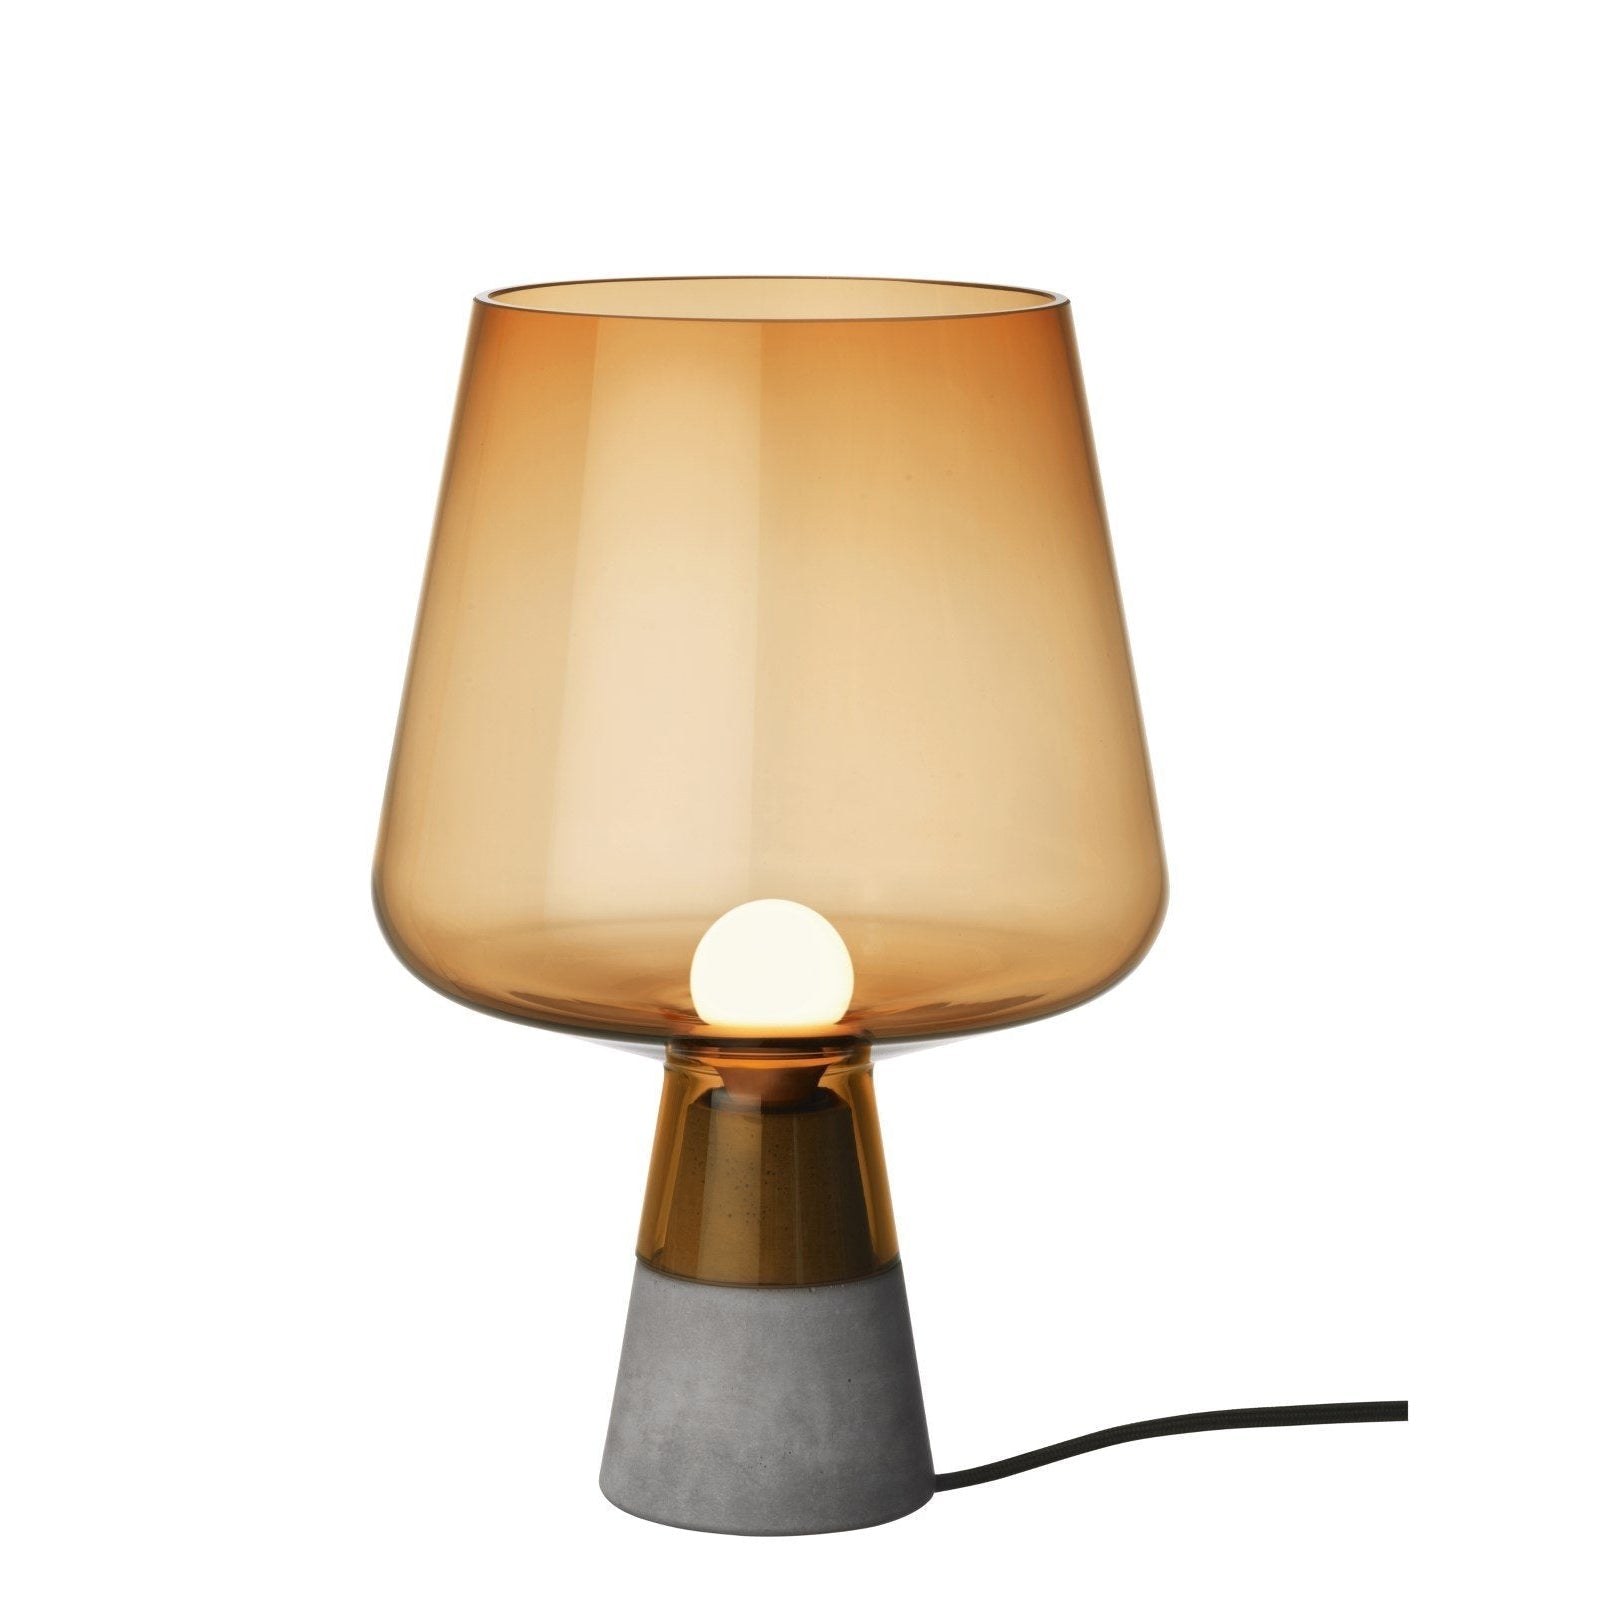 Iittala Leimu -lampun kupari, 30 cm